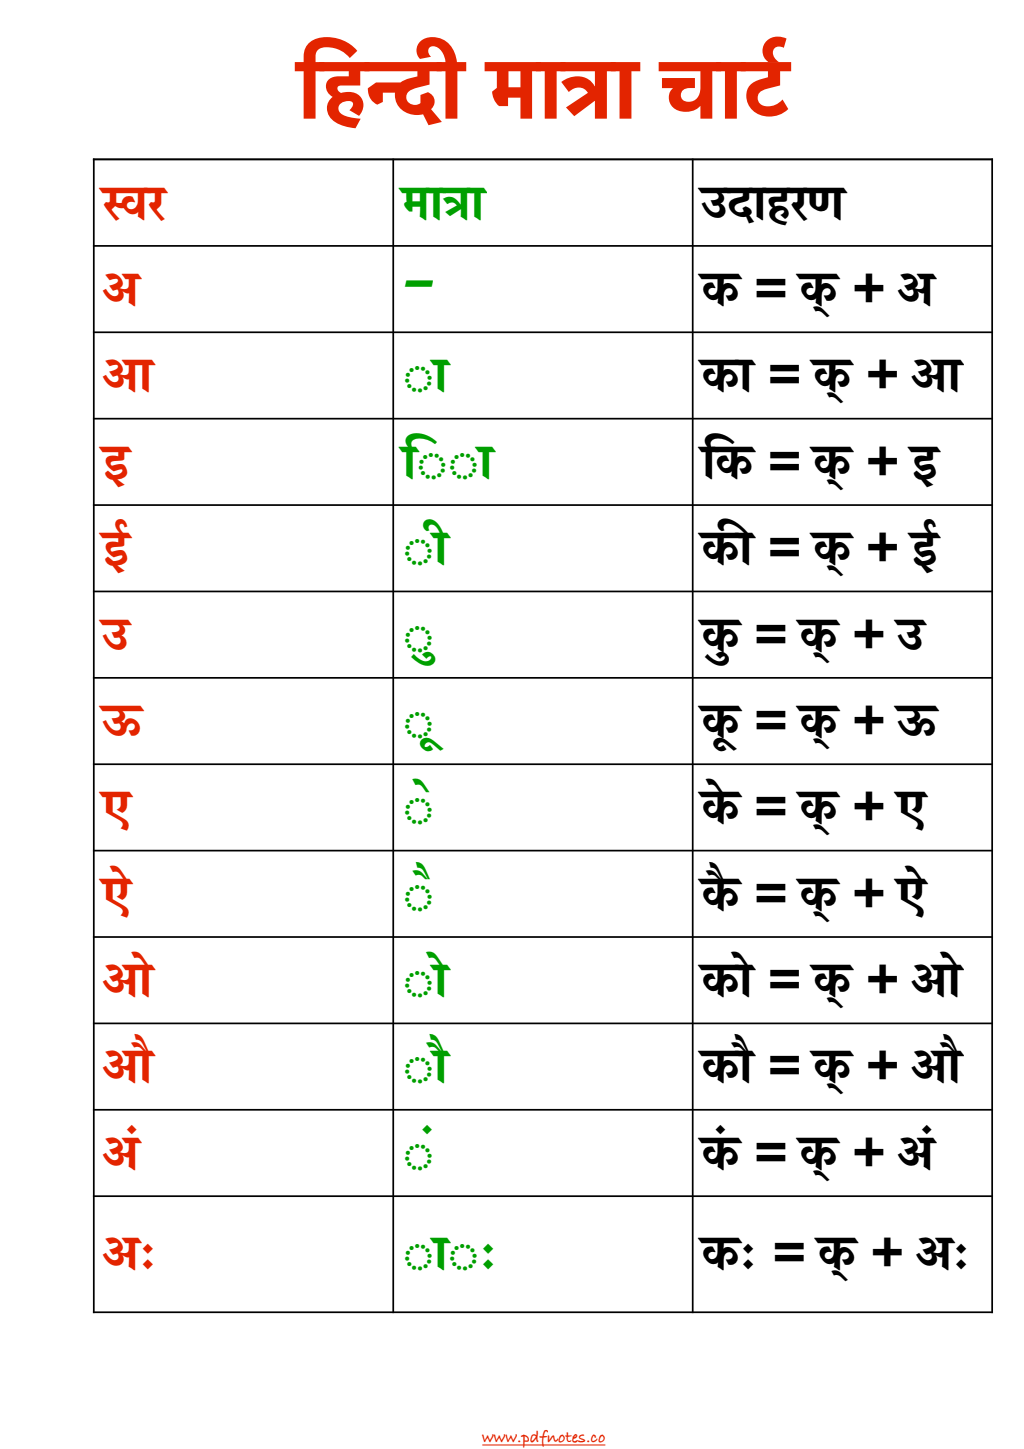 Hindi Matra Chart With Words PDF | हिन्दी मात्रा चार्ट